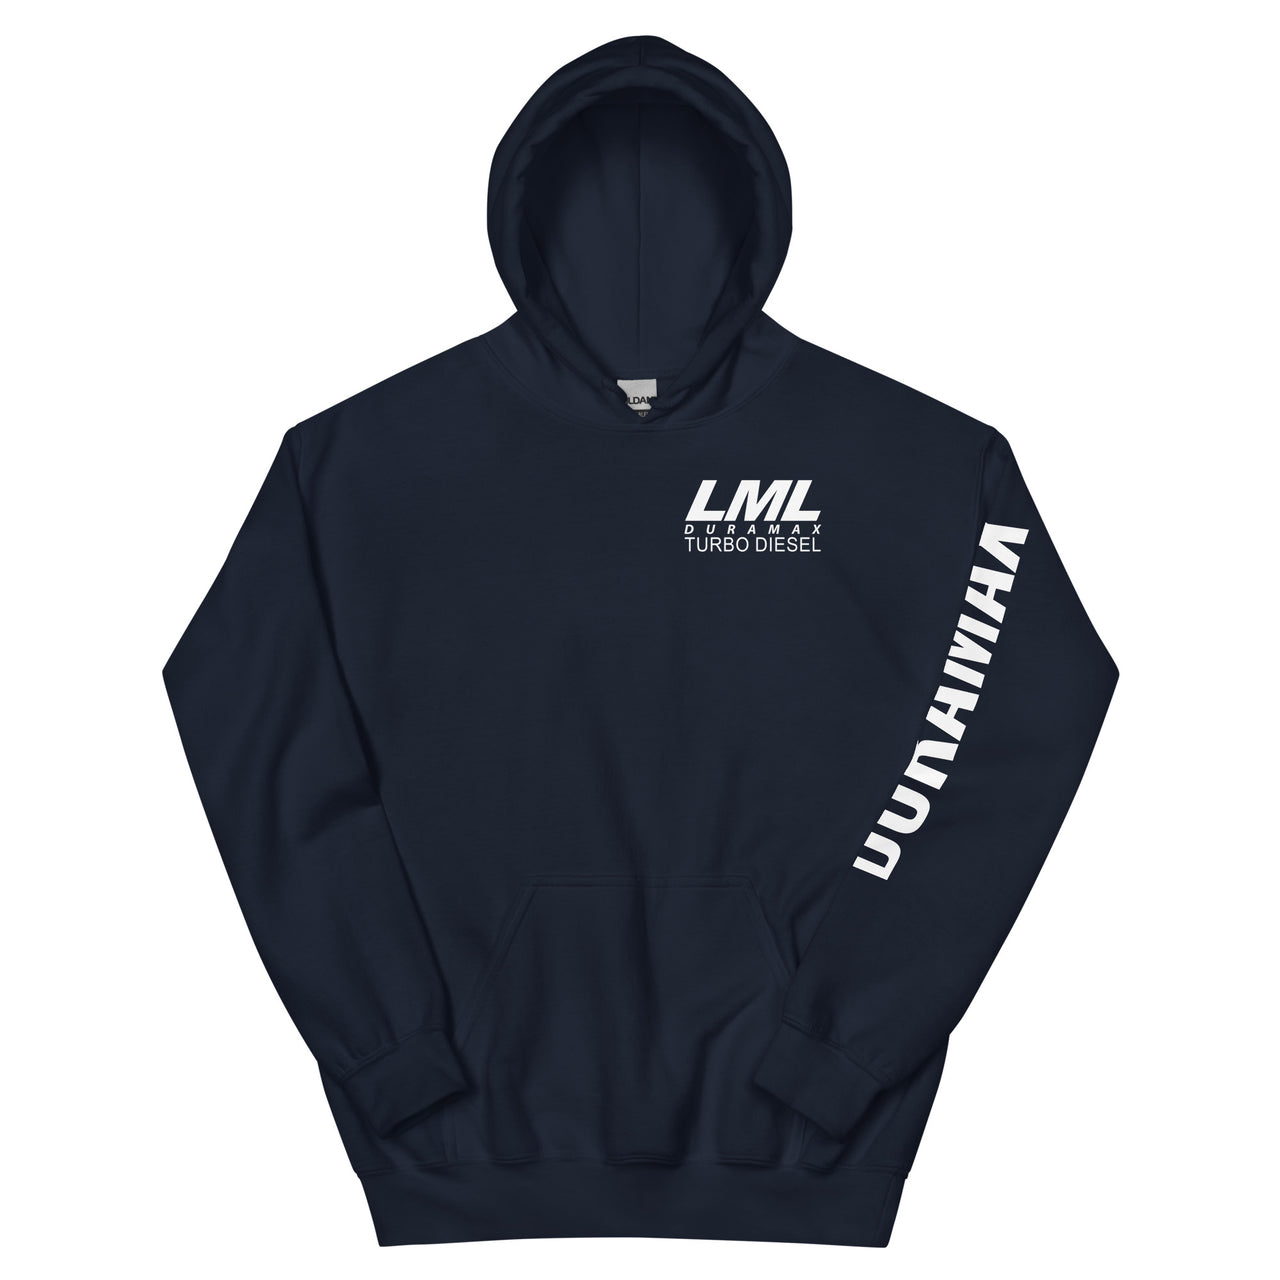 LML Duramax Hoodie Pullover Sweatshirt With Sleeve Print in navy